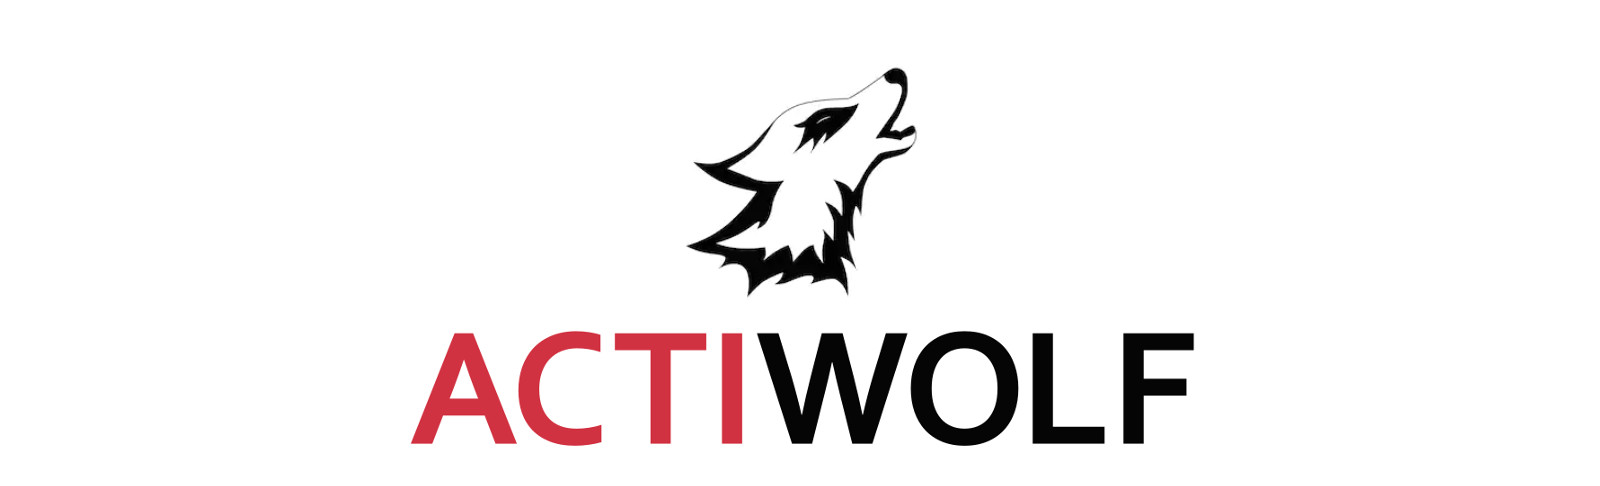 ActiWolf logo2.png